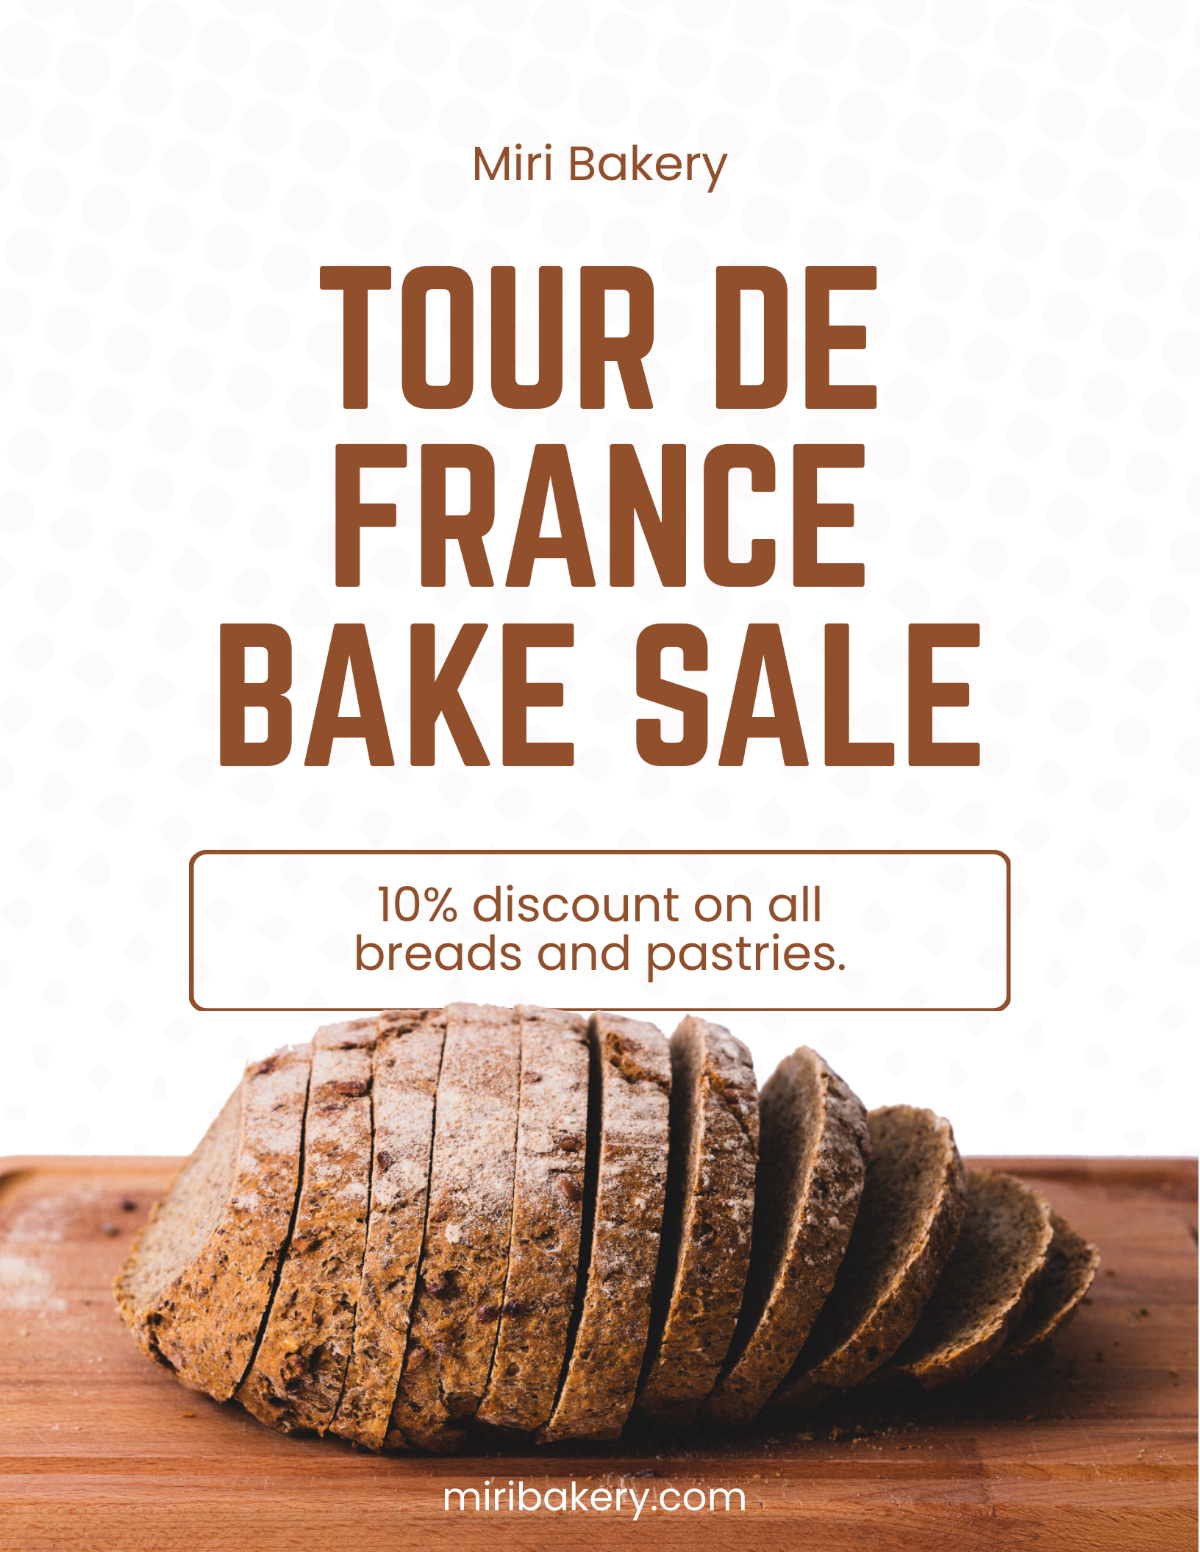 Tour De France Promotion Flyer Template